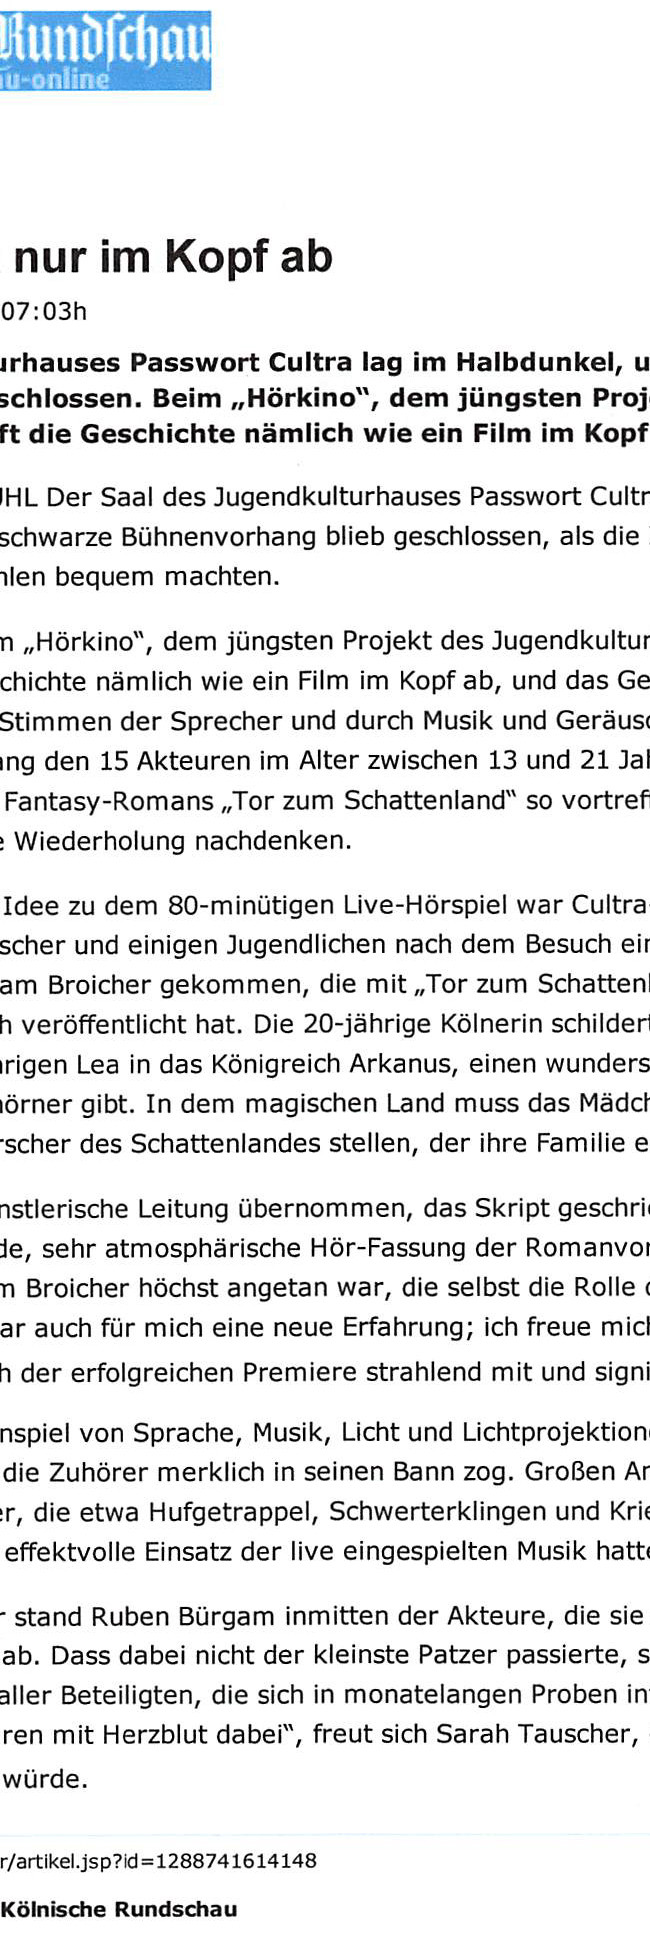 Presseartikel Kölnische Rundschau vm 20.12.2009